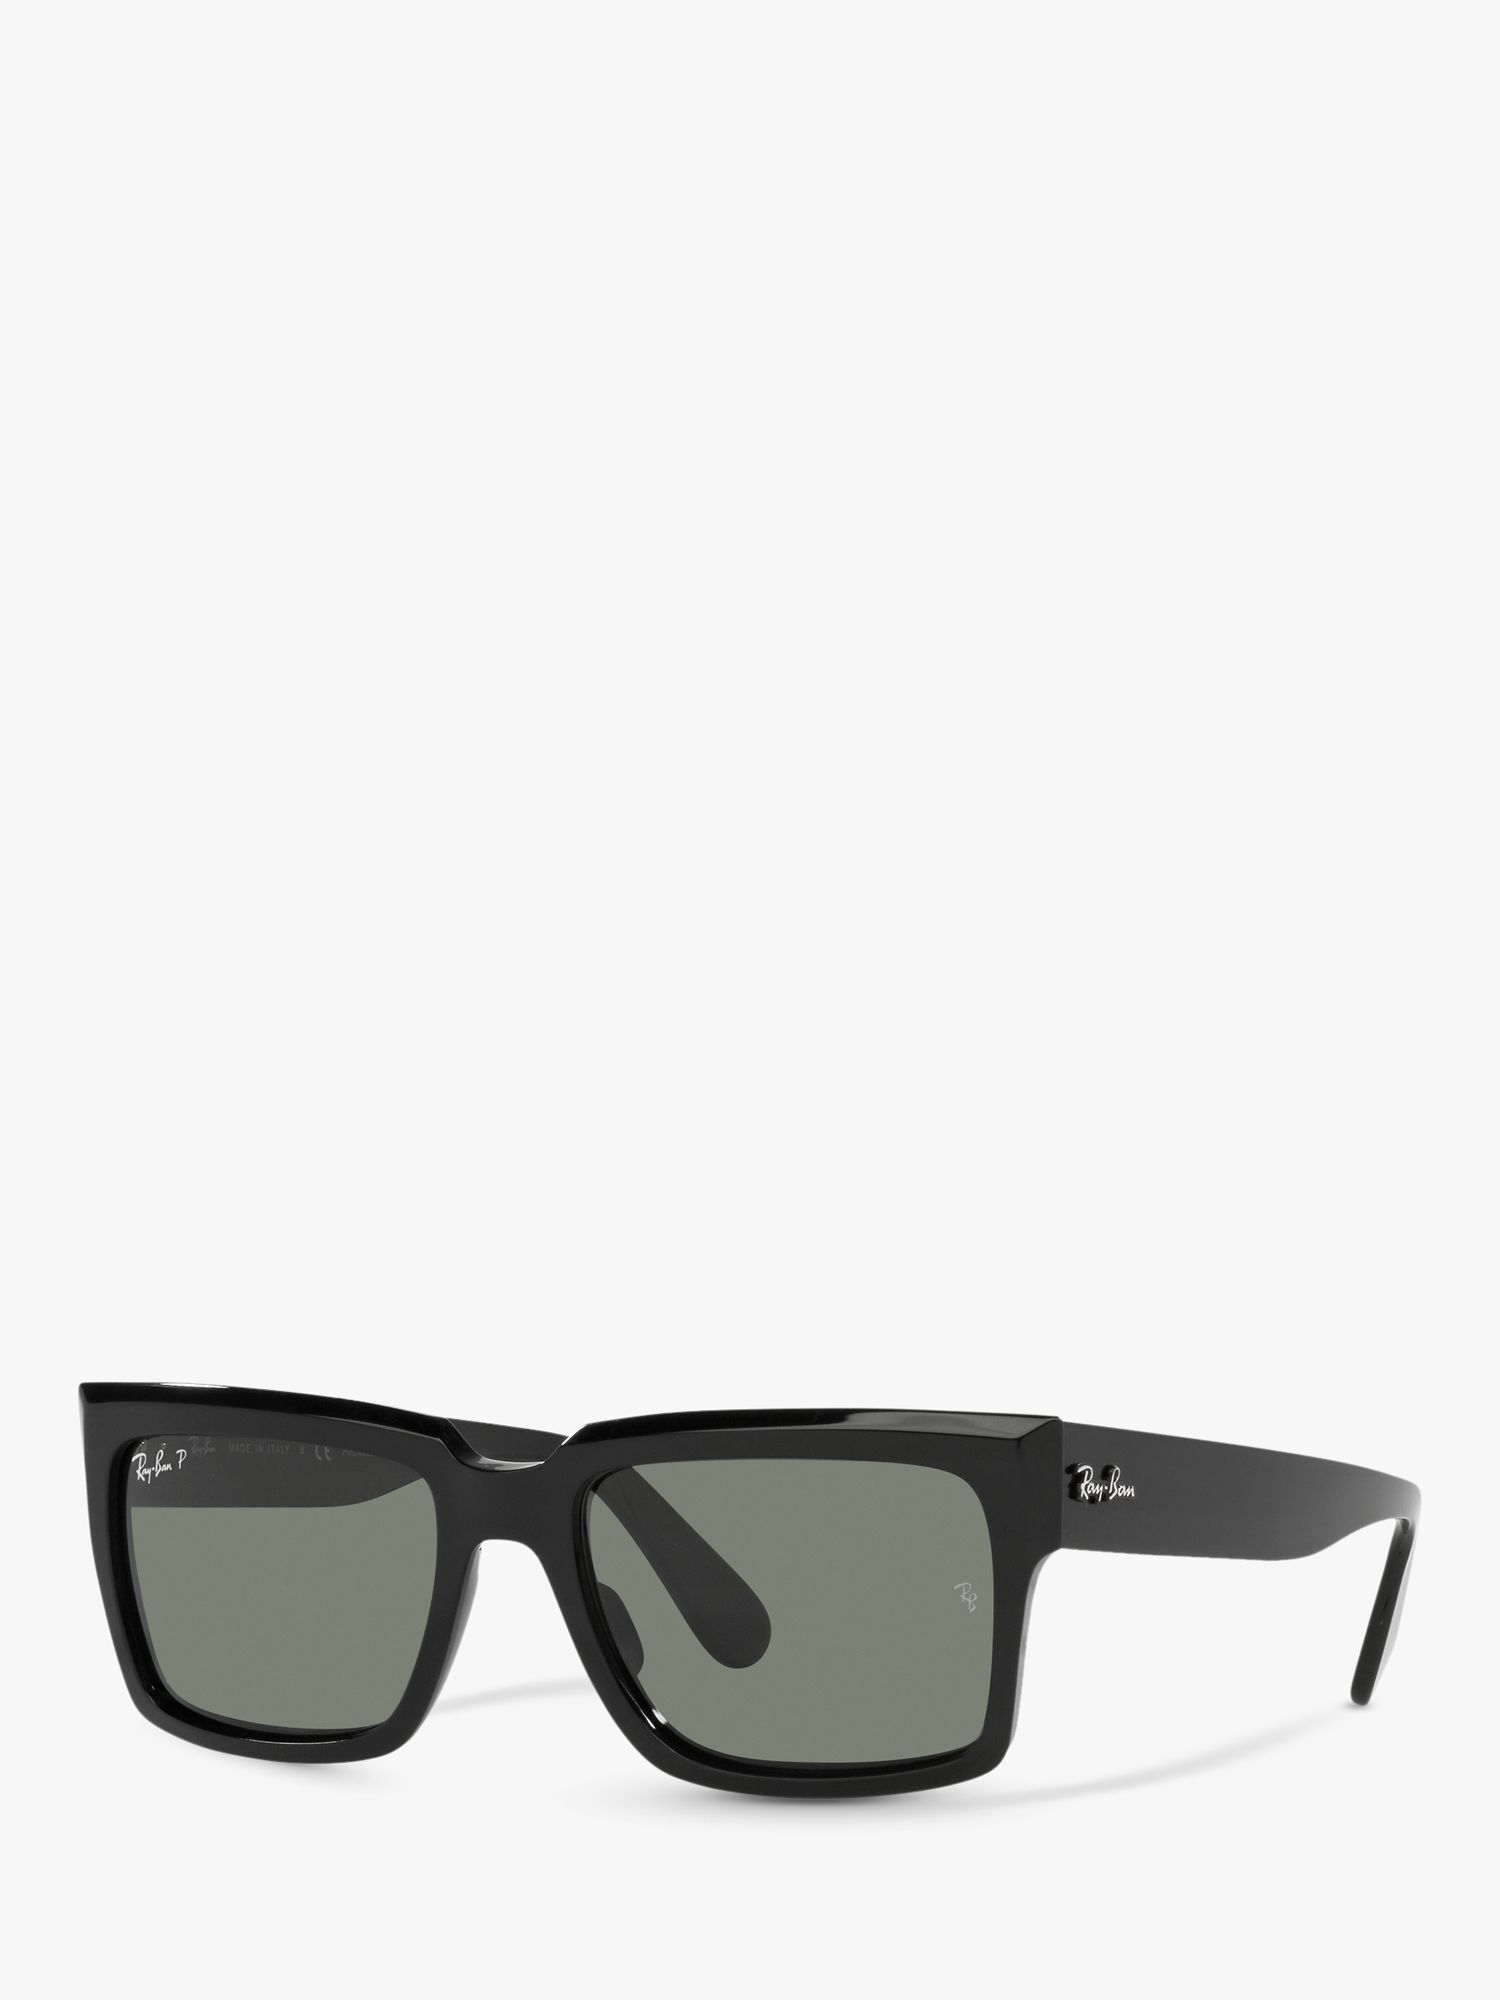 Поляризованные солнцезащитные очки Ray-Ban RB2191 унисекс в форме подушки, черные